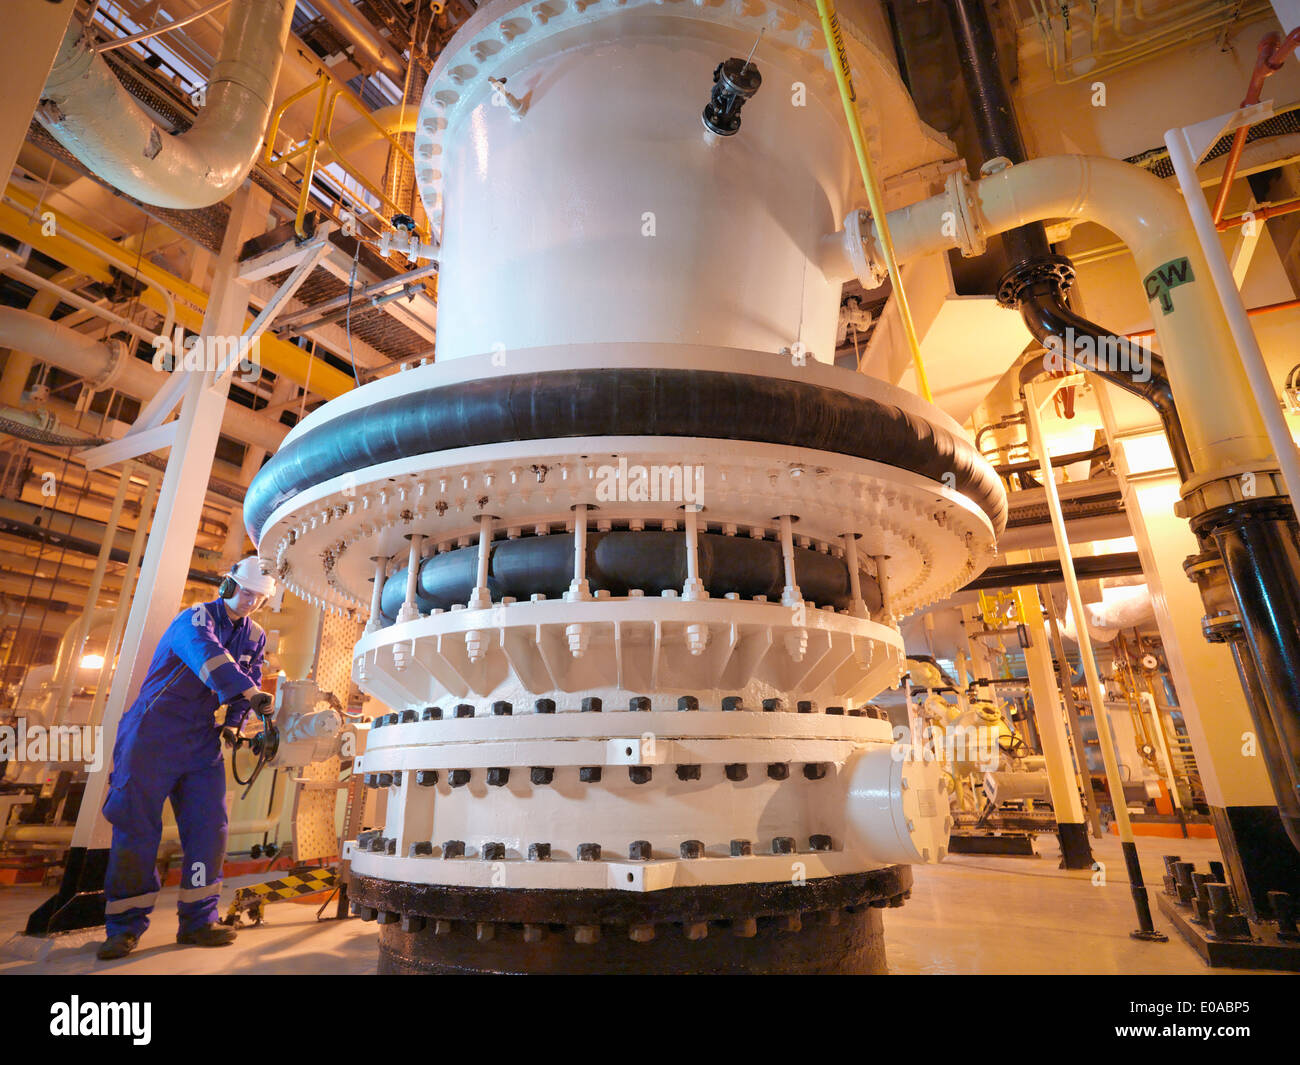 Engineer adjusting seawater valve in power Stock Photo